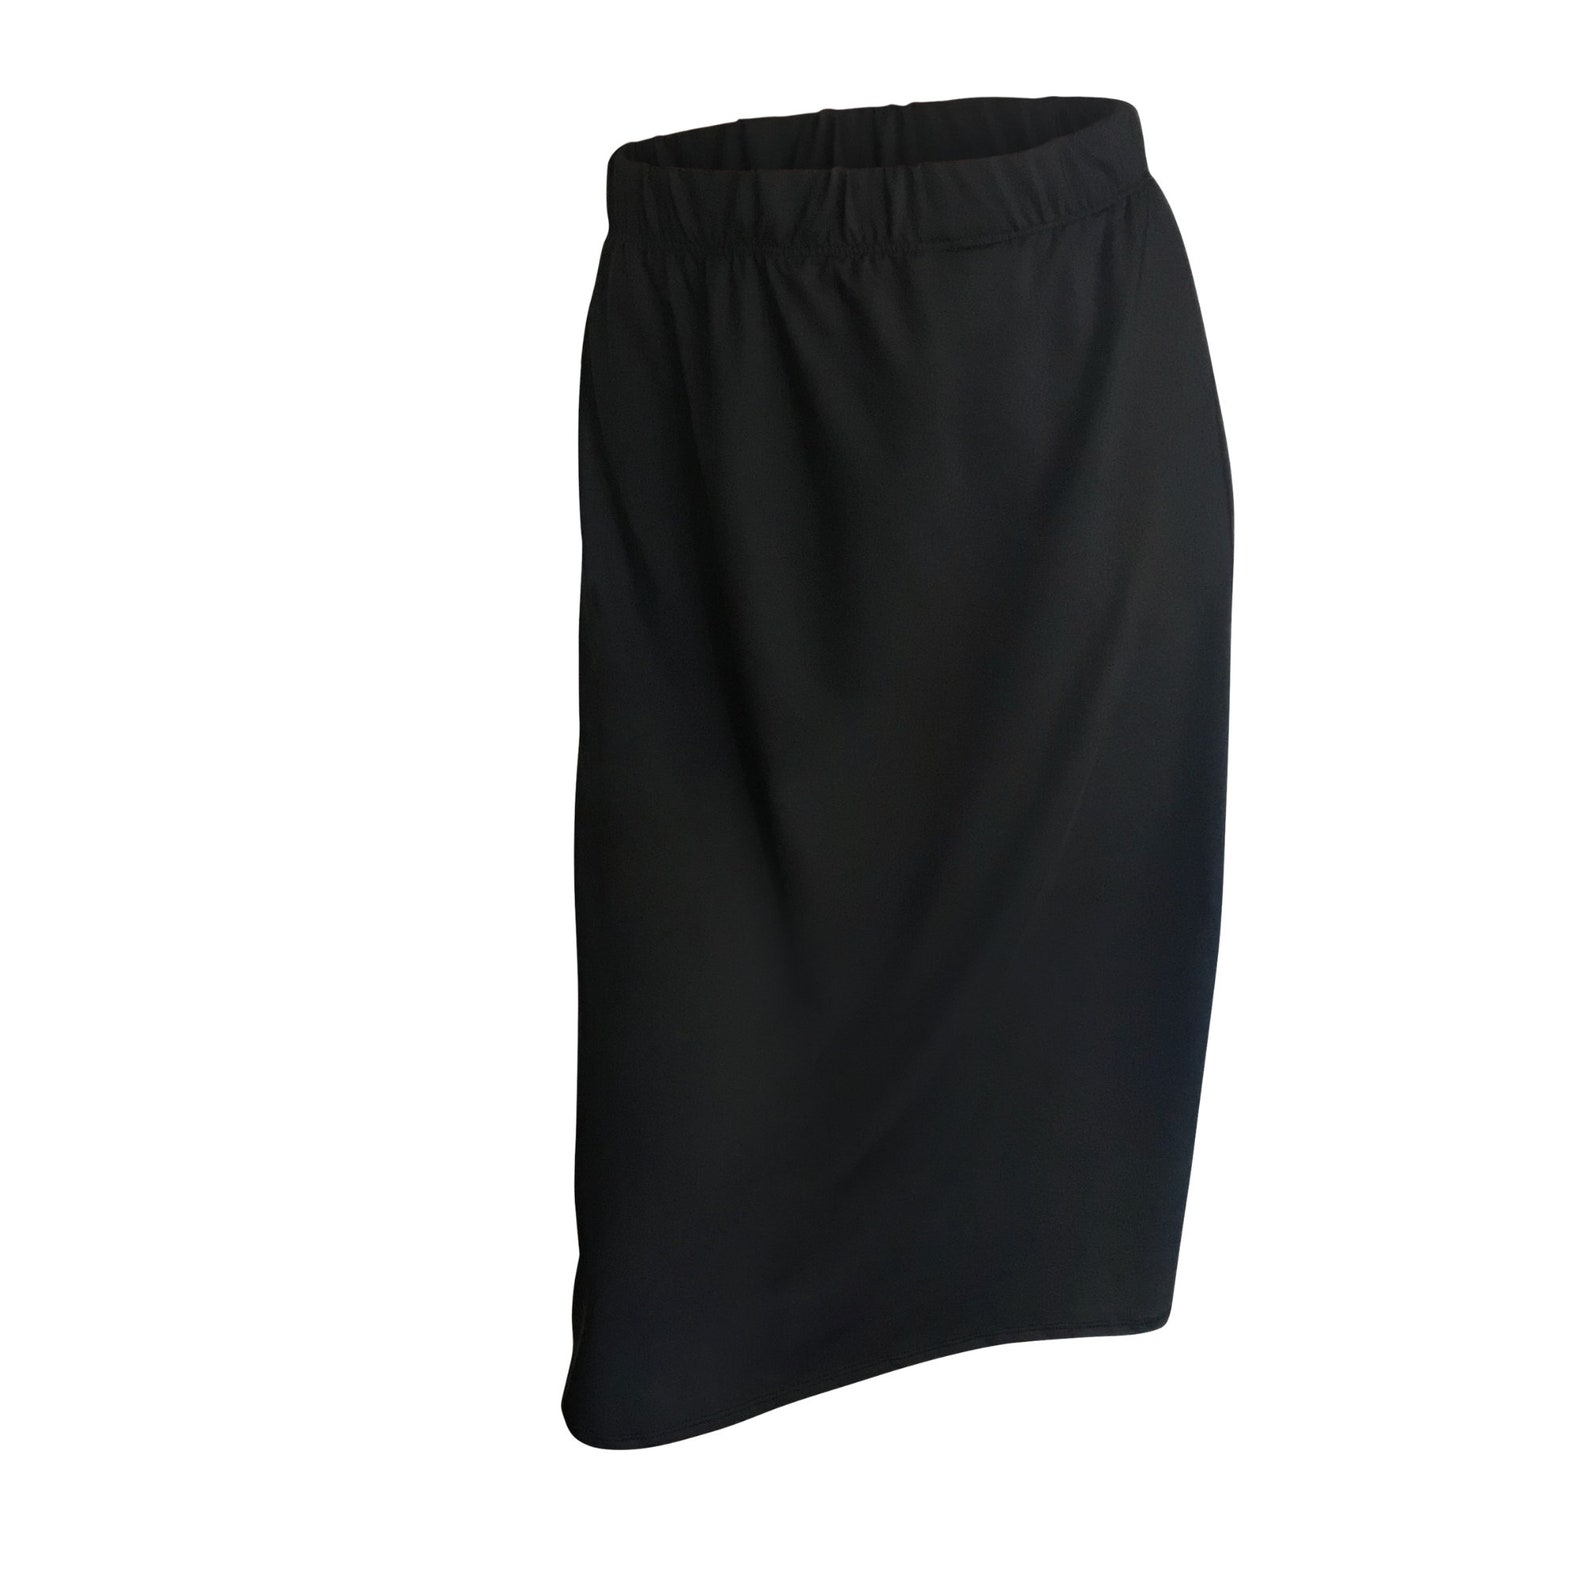 Black Modest Sun Protection Athletic Skirt Running Skirt | Etsy